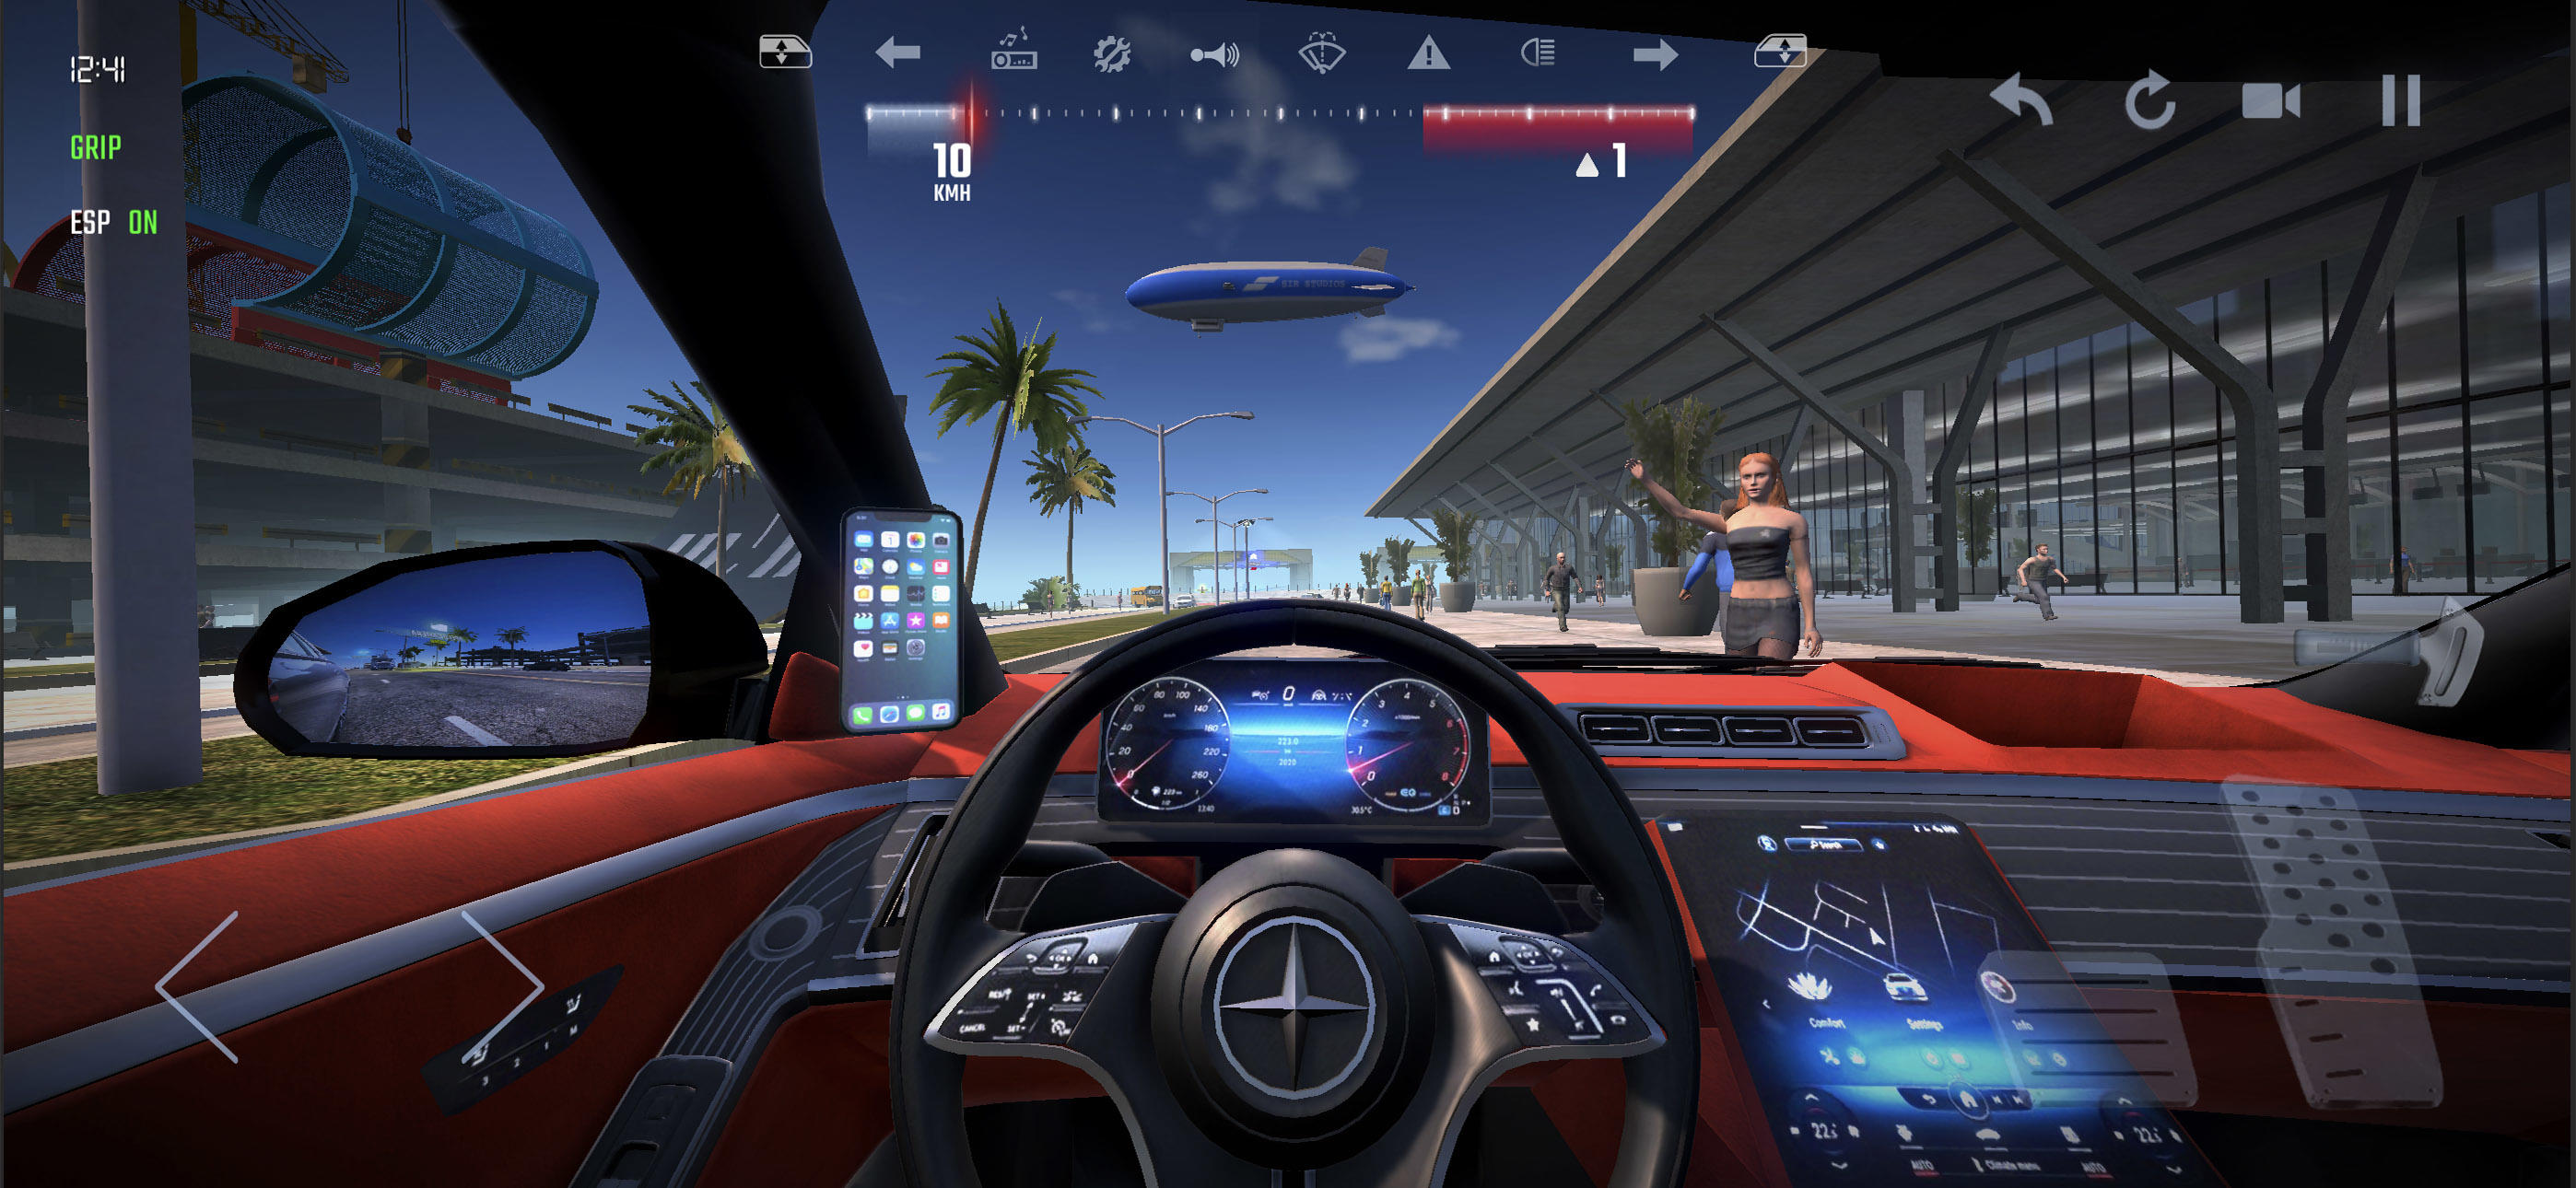 UCDS 2 - Car Driving Simulatorのキャプチャ